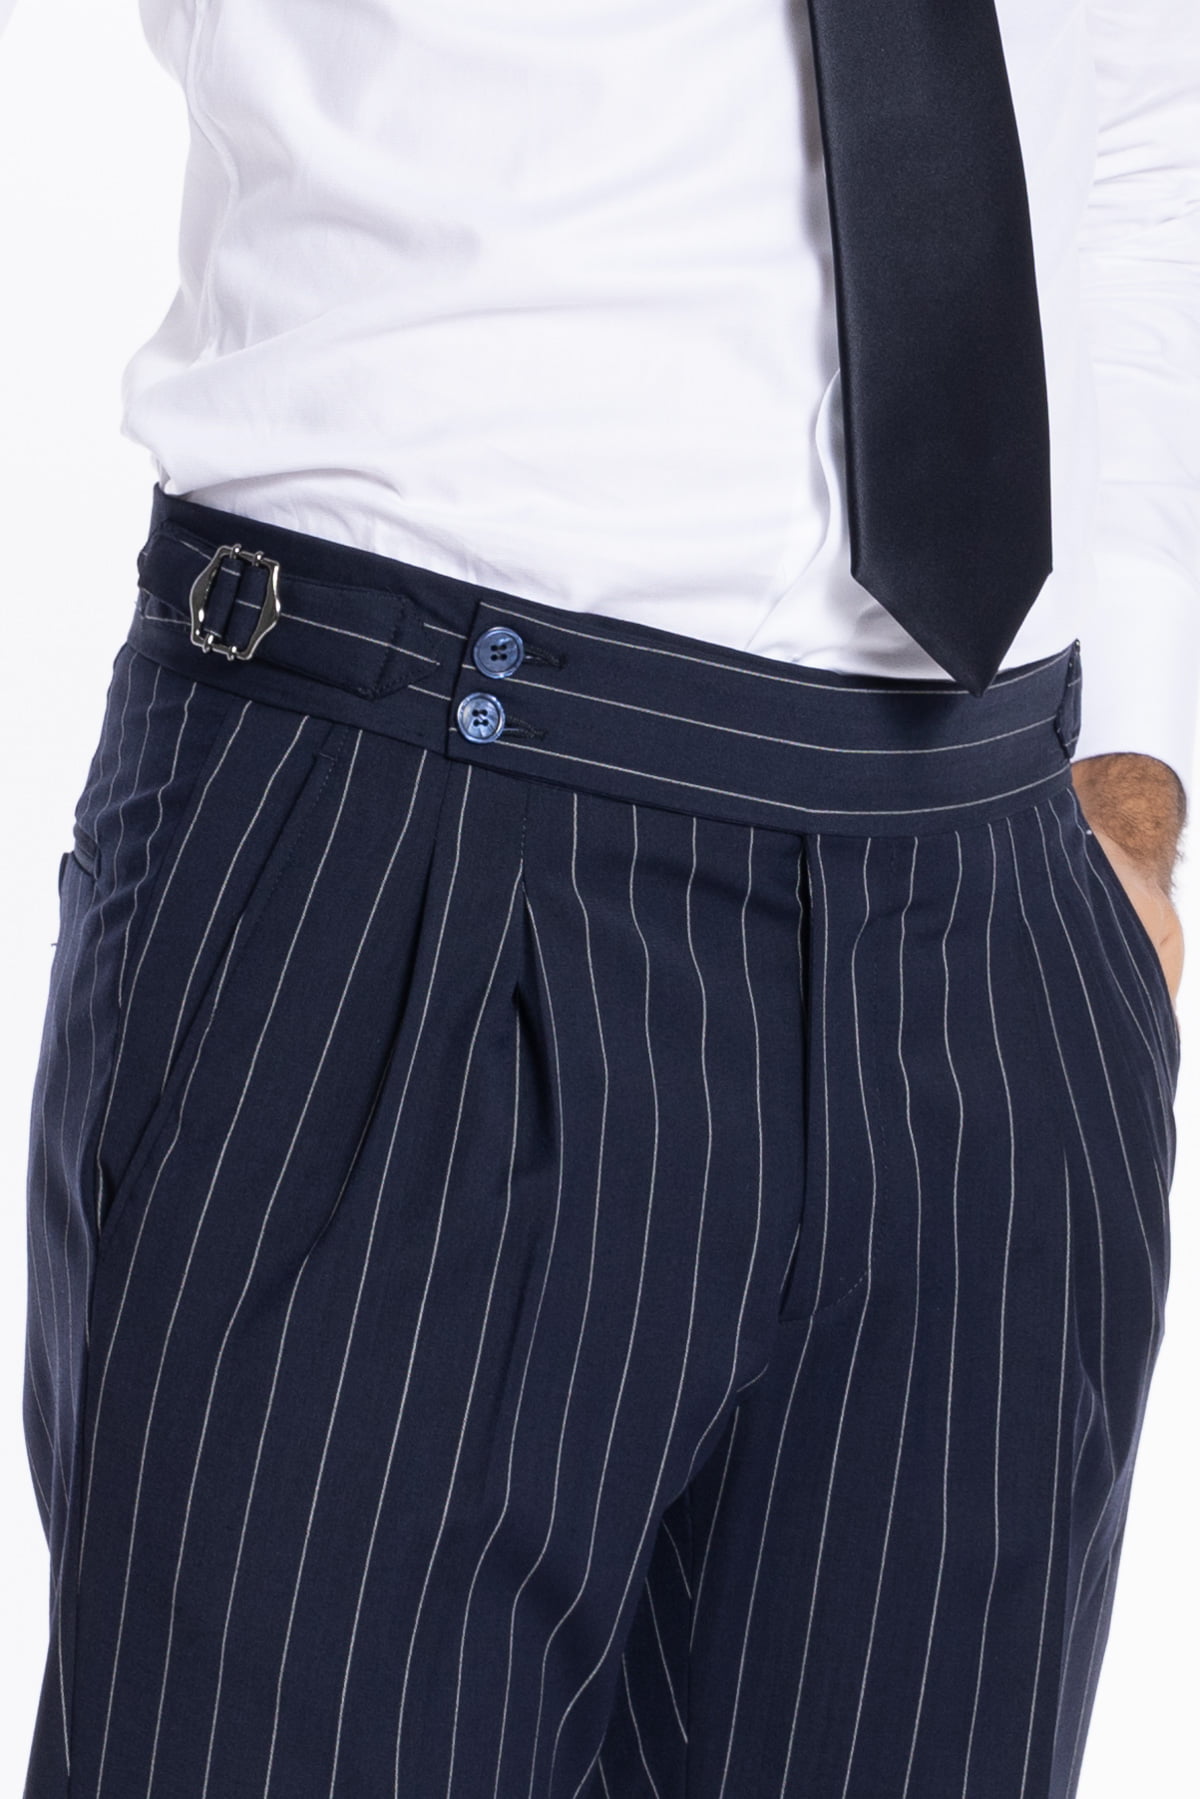 Pantalone uomo blu gessato vita alta tasca america in fresco lana misto con doppia pinces e fibbie laterali regolabili